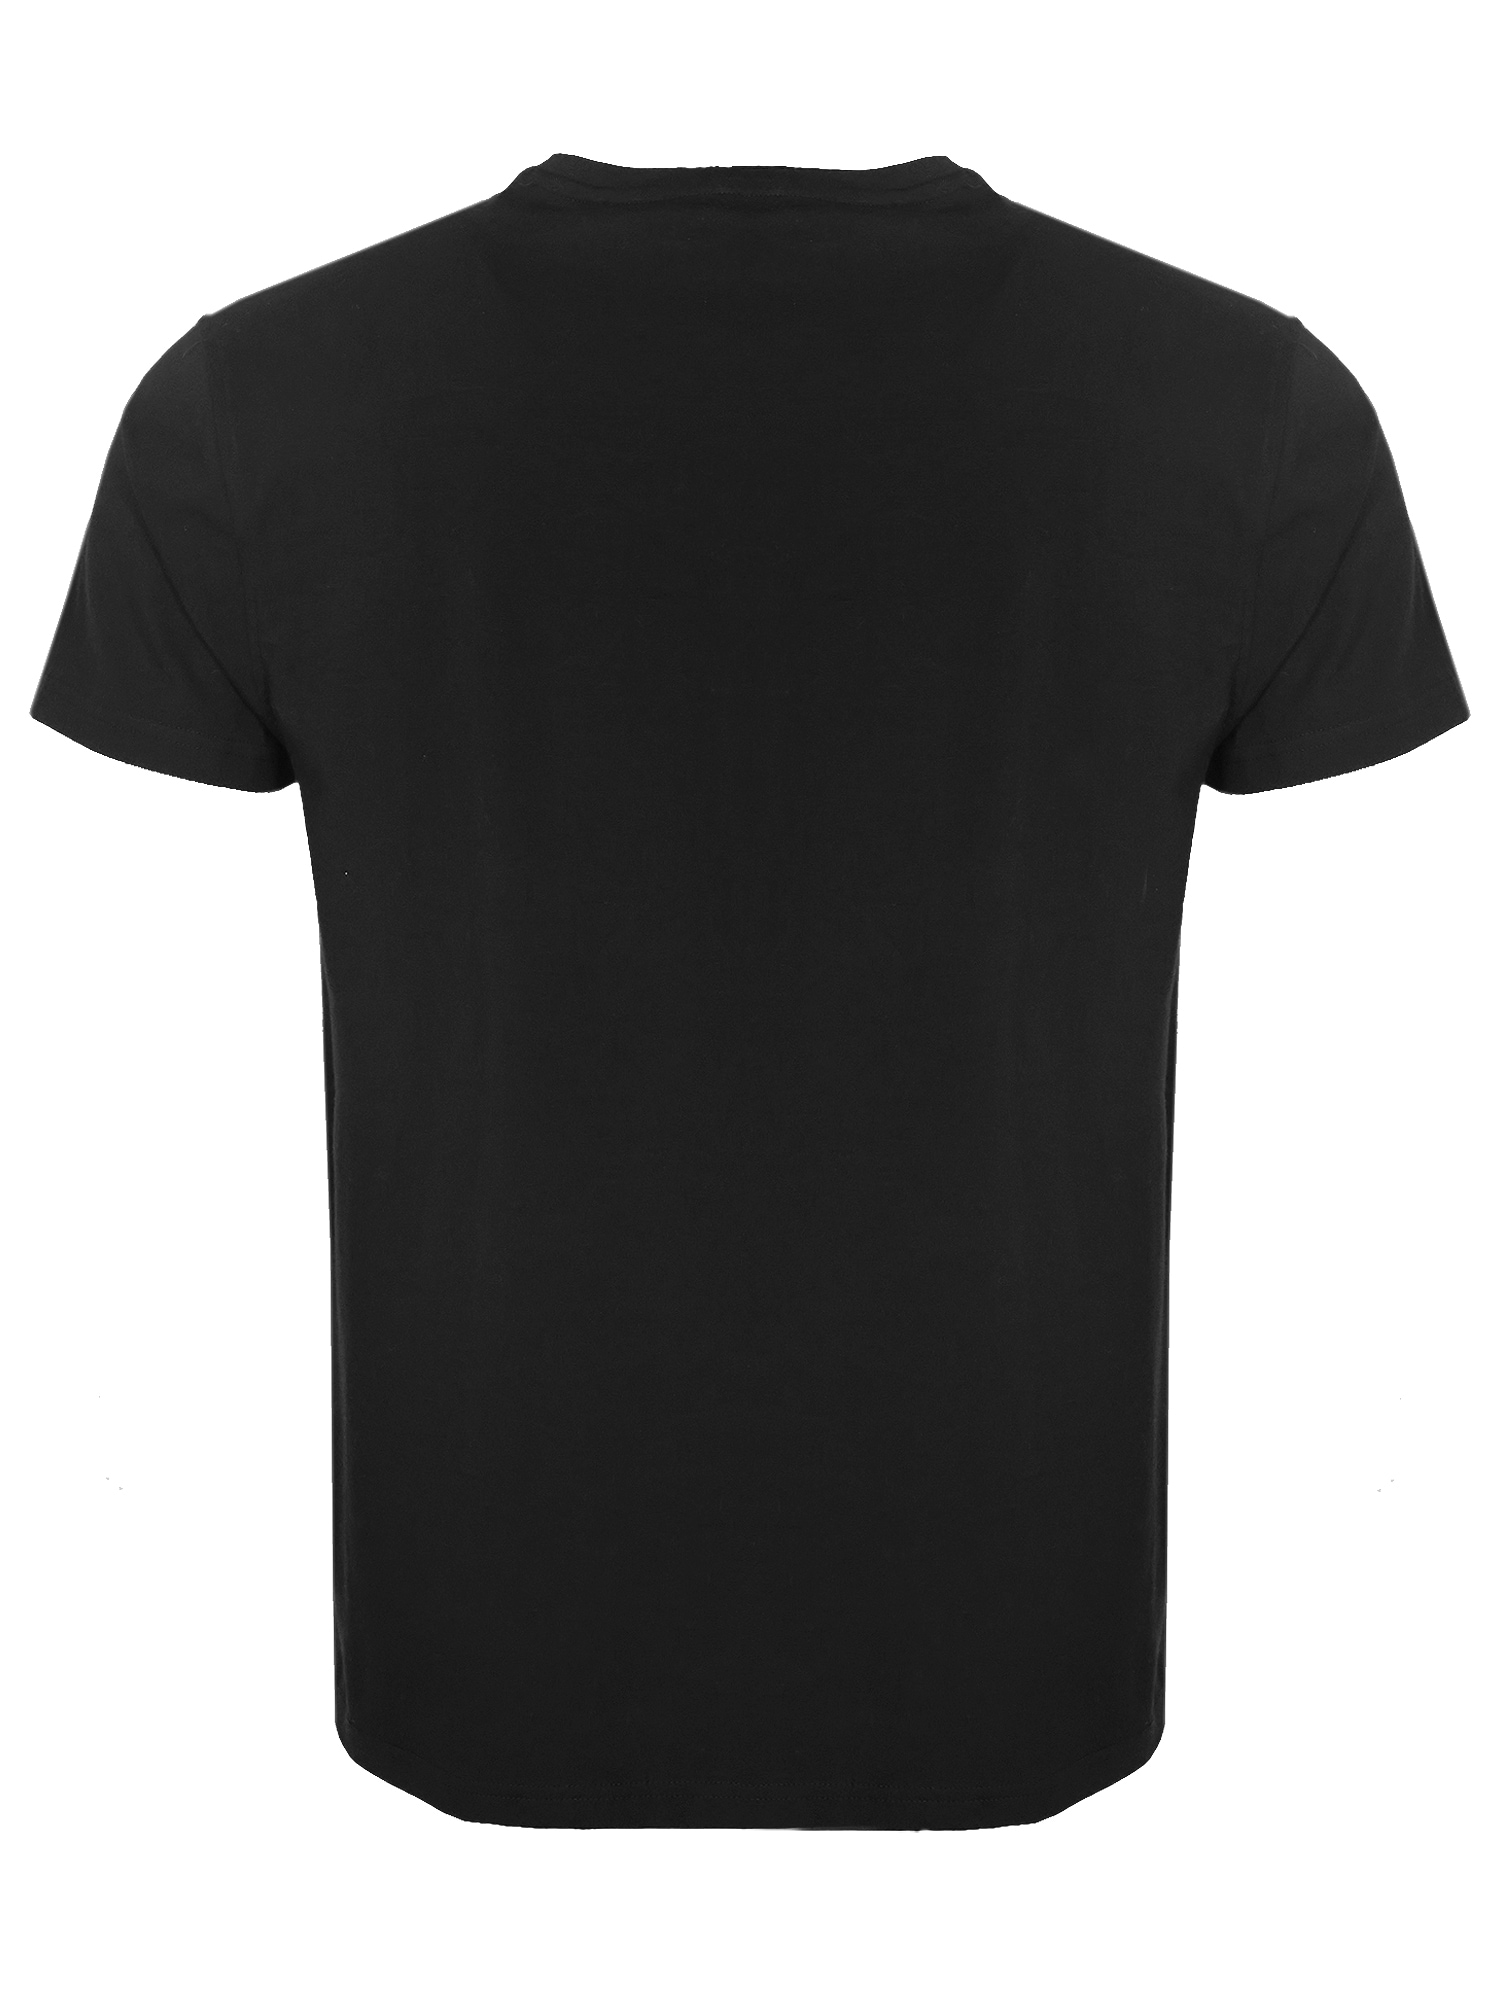 »T-Shirt OTTO TOP GUN T-Shirt kaufen TG22028« bei online